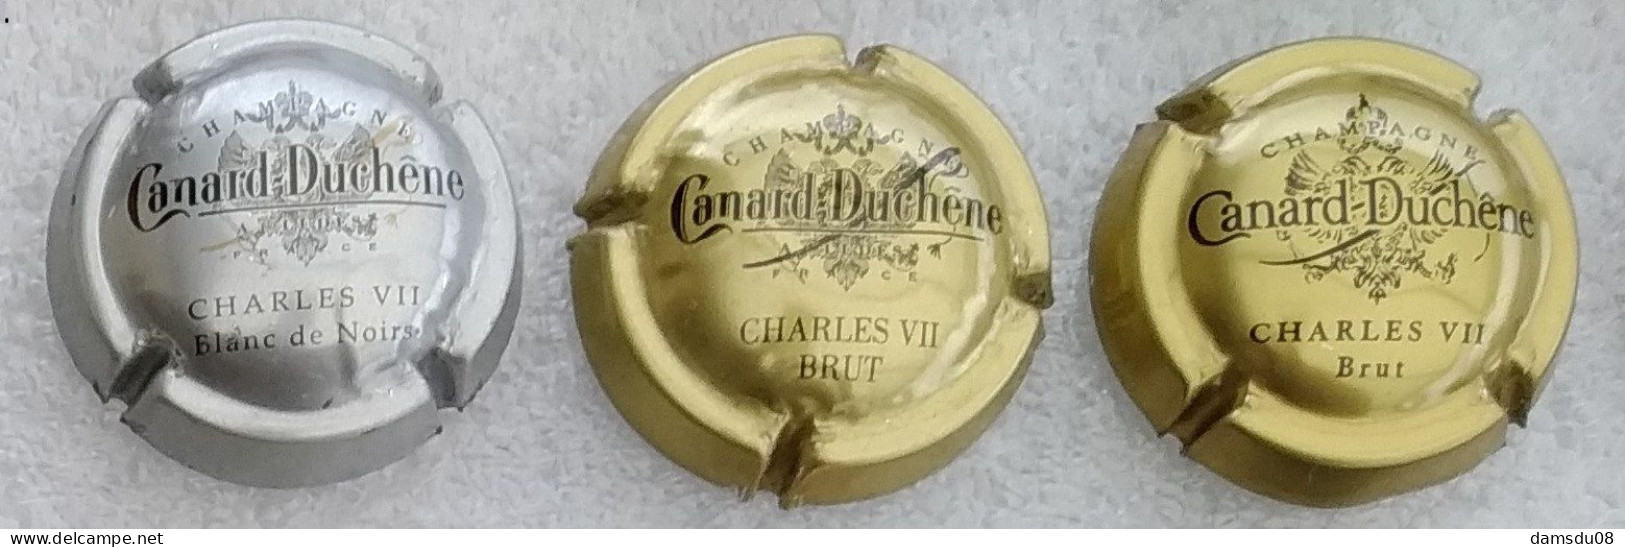 3 Capsules De Champagne Canard Duchene - Canard Duchêne